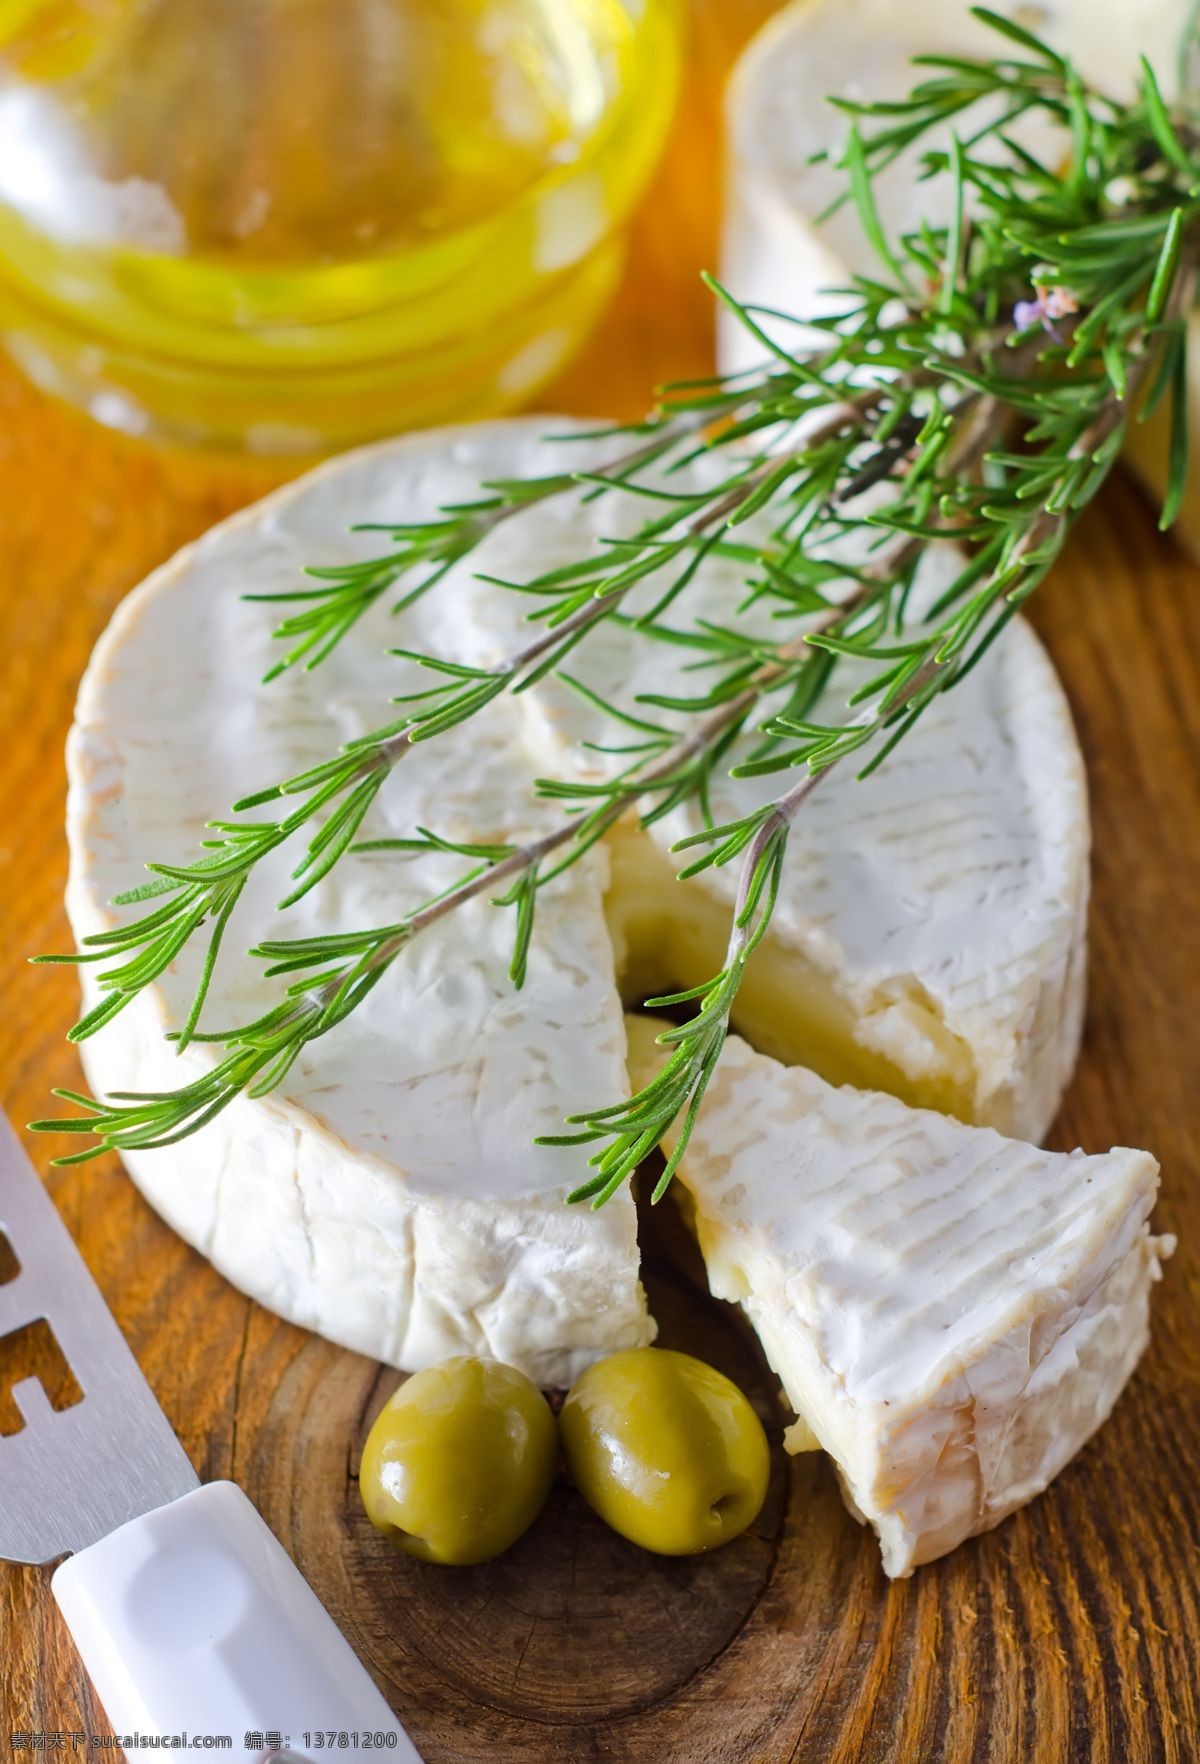 橄榄与奶酪 橄榄 奶酪 乳酪 芝士 奶酪摄影 食物原料 食材 美食 外国美食 餐饮美食 白色